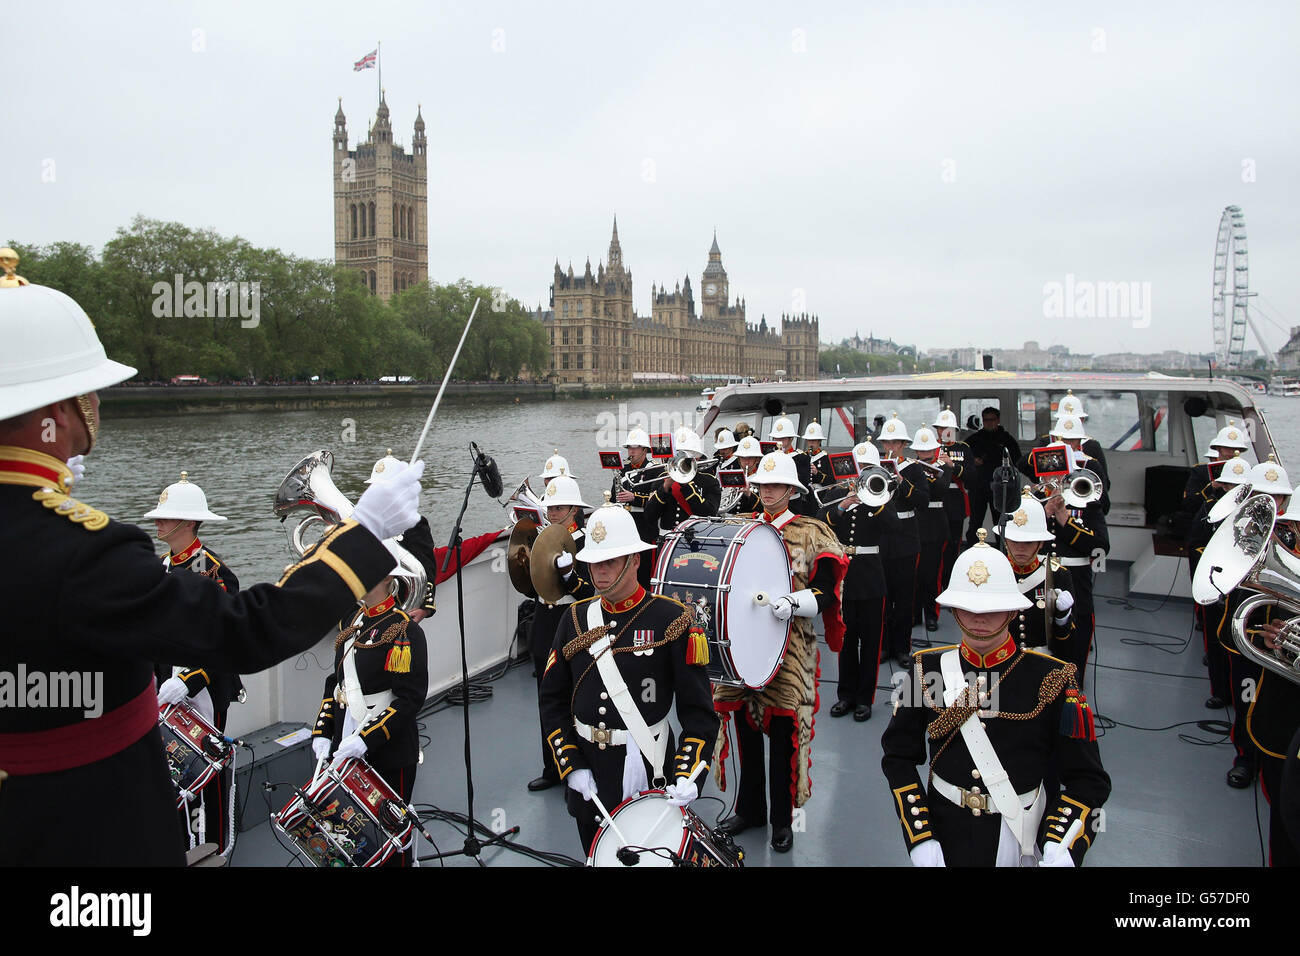 La bande des Royal Marines se produit lors du Diamond Jubilee River Pageant sur la Tamise, à Londres. Banque D'Images